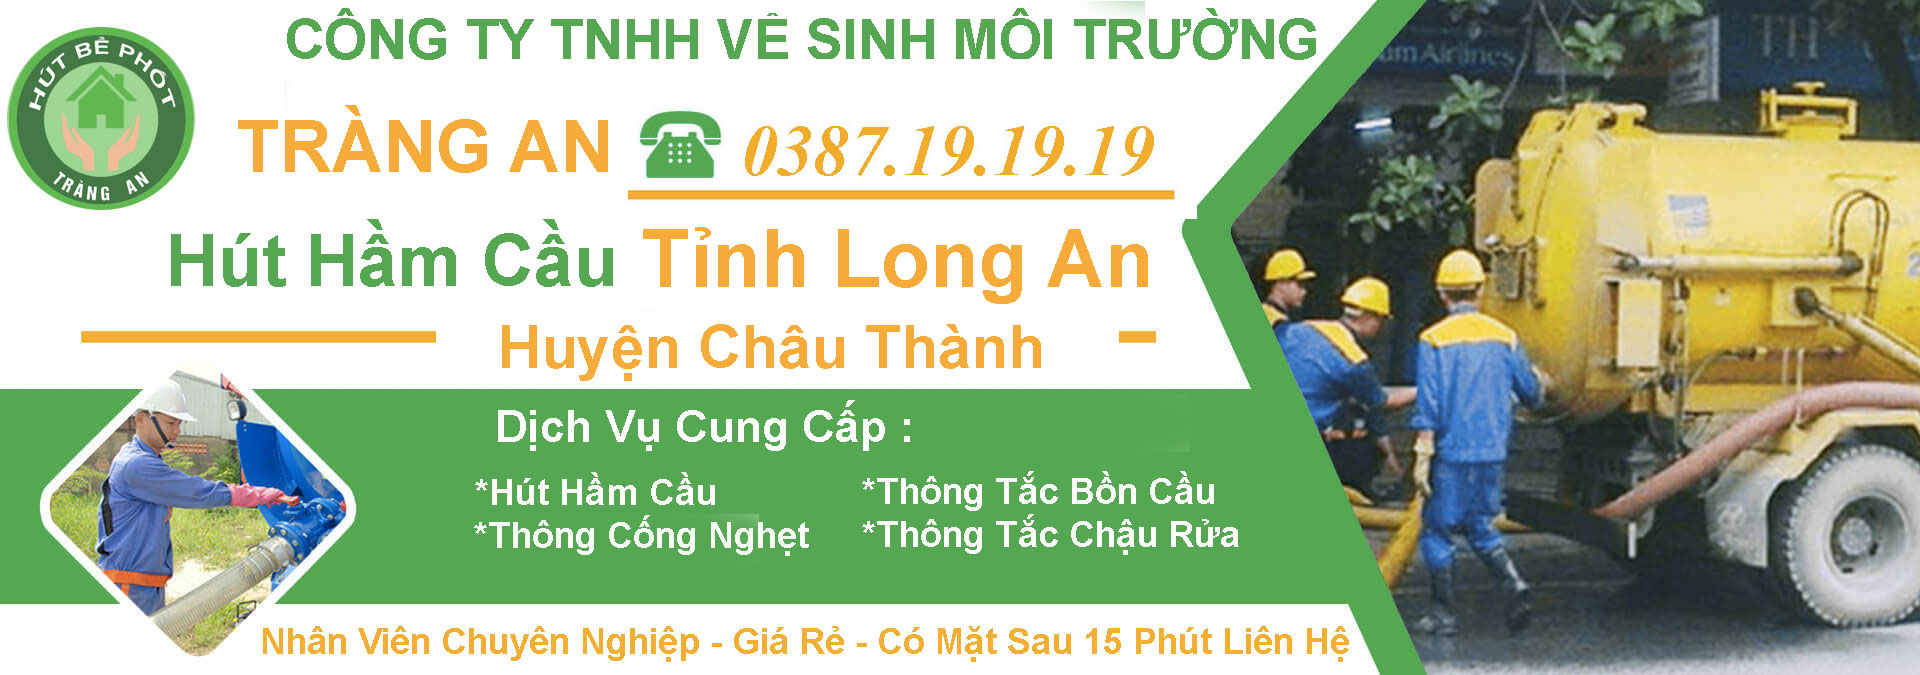 Hut Ham Cau Long An Huyen Chau Thanh